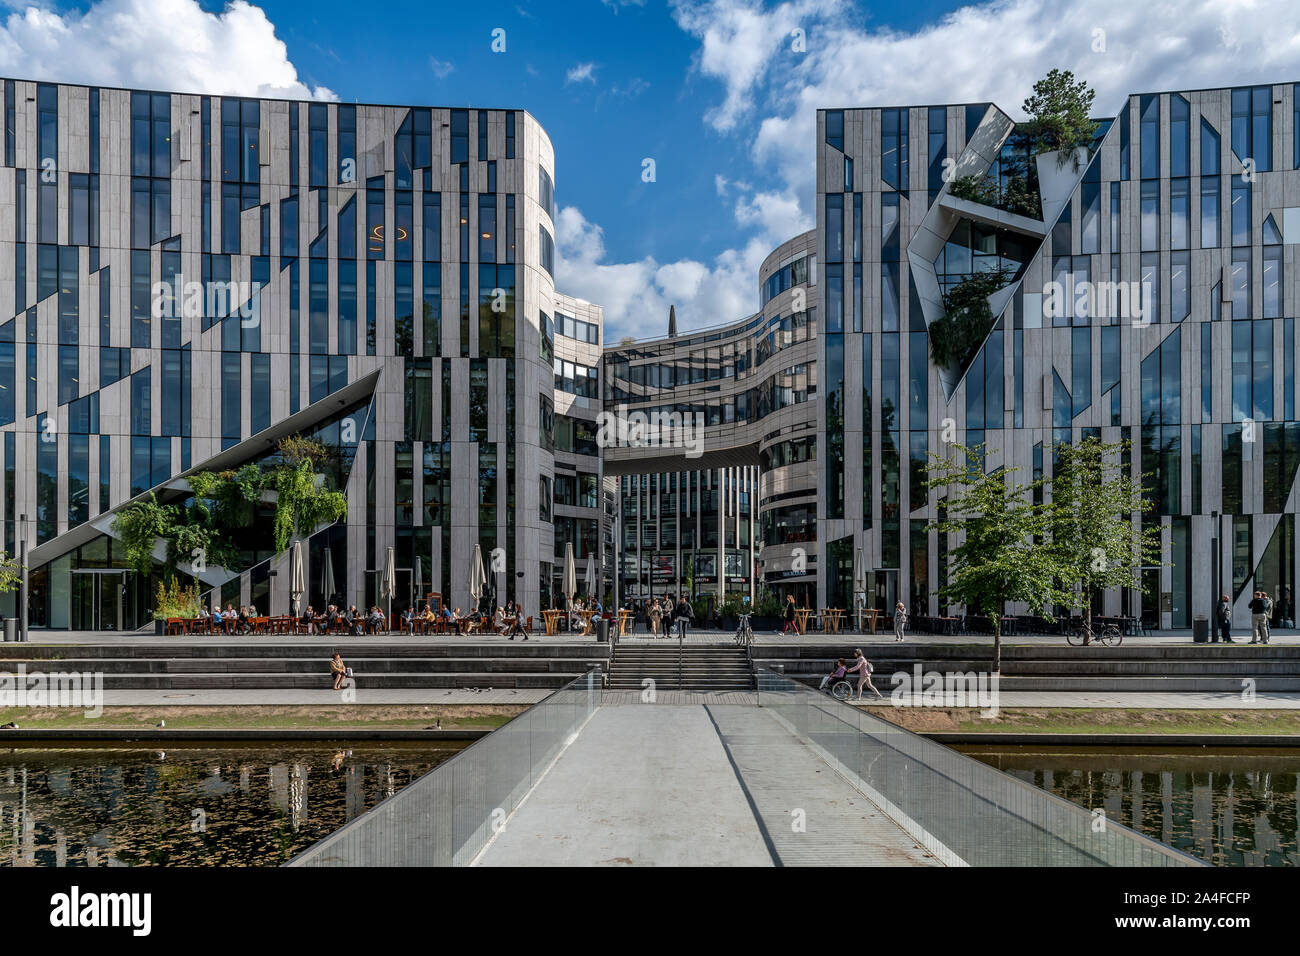 Kö-Bogen Shopping Center und Breuninger Kaufhaus in Düsseldorf, Deutschland. Durch polnische Architekten Daniel Libeskind entworfen, Eröffnung im Jahr 2014. Stockfoto